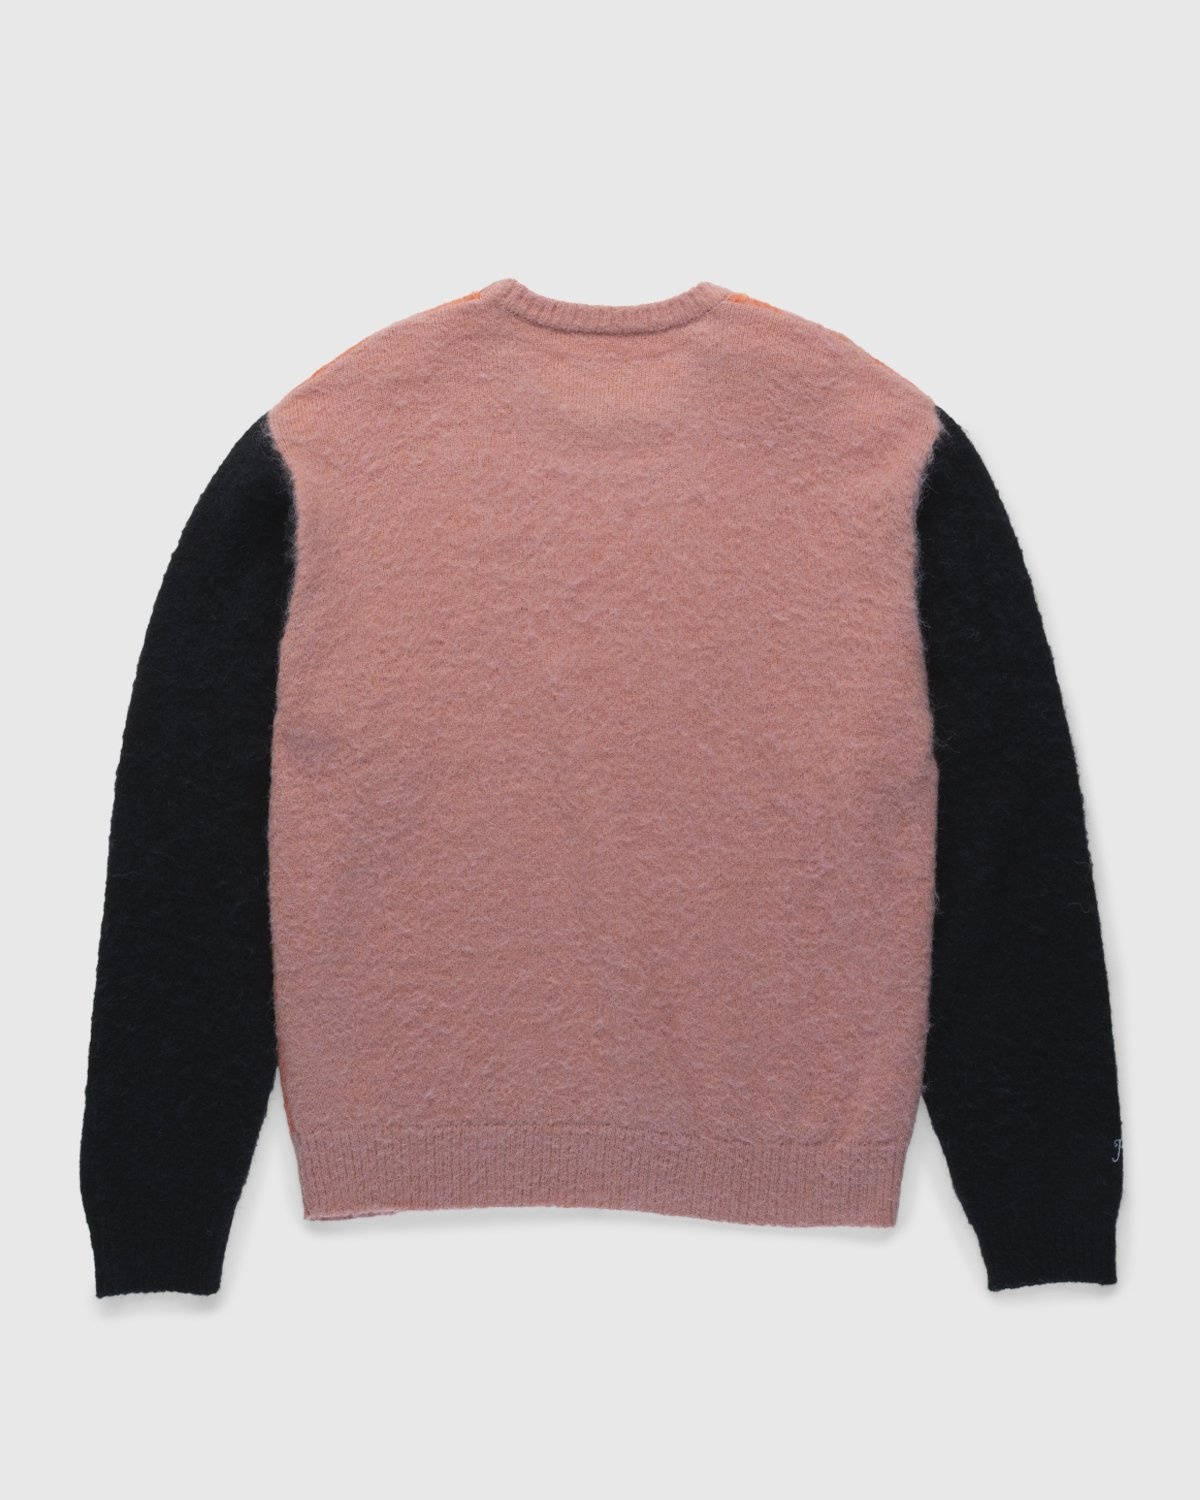 Highsnobiety – Check Alpaca Sweater Multi Red - Crewnecks - Red - Image 2